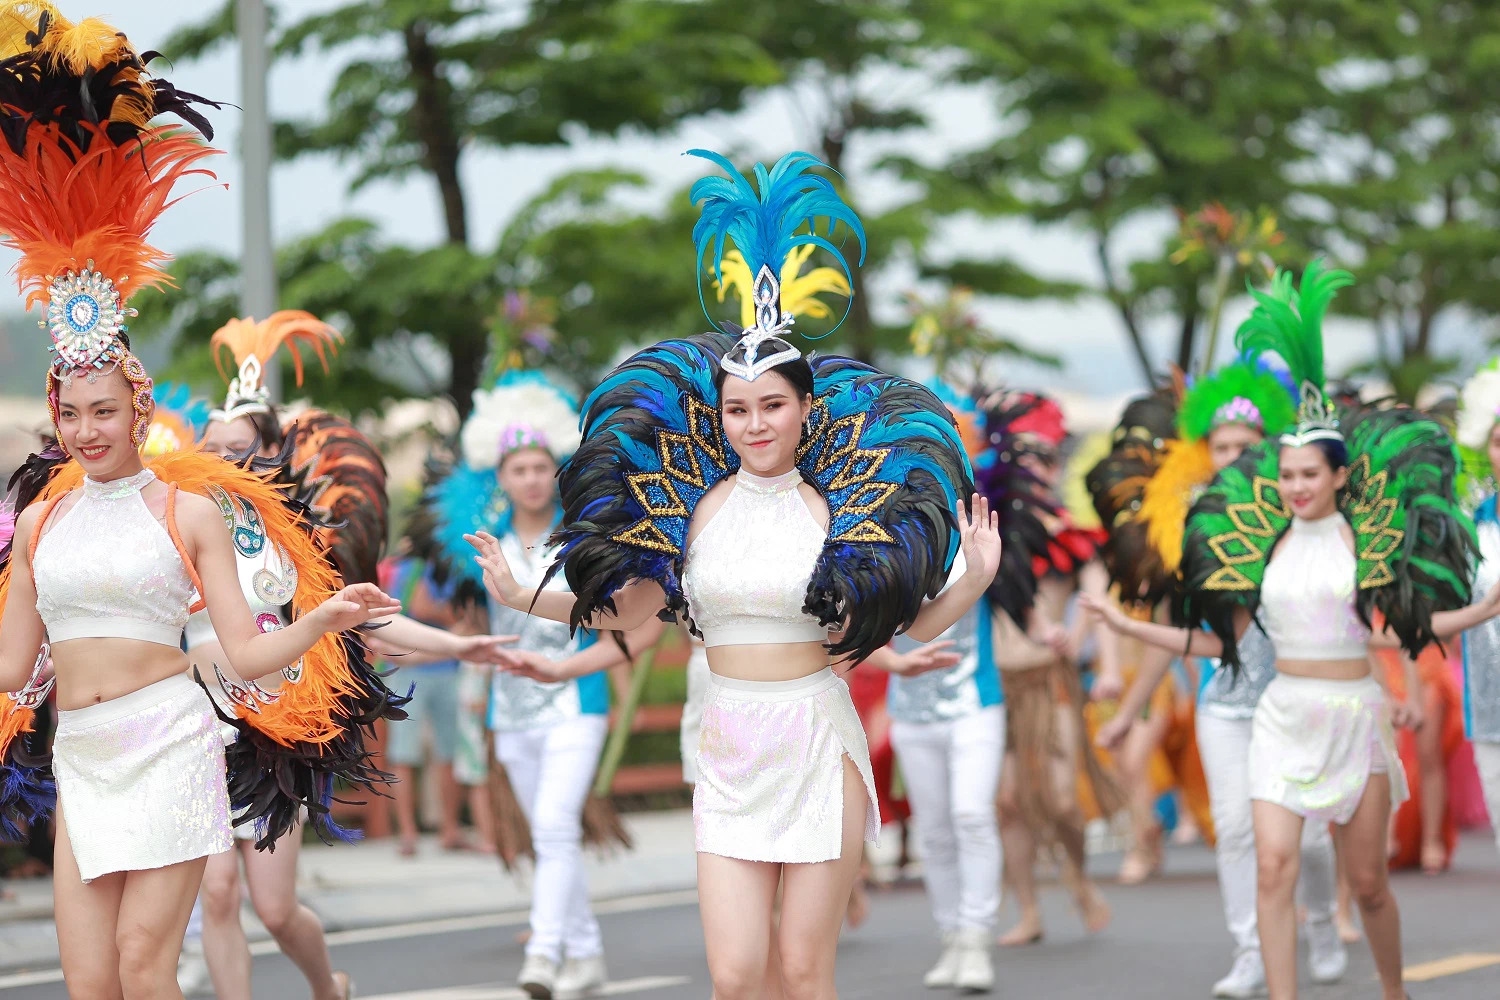 Lễ hội Carnaval Hạ Long sở hữu những ấn tượng rất riêng, bởi sắc thái và hình ảnh tượng trưng mà nó mang lại cho người xem.